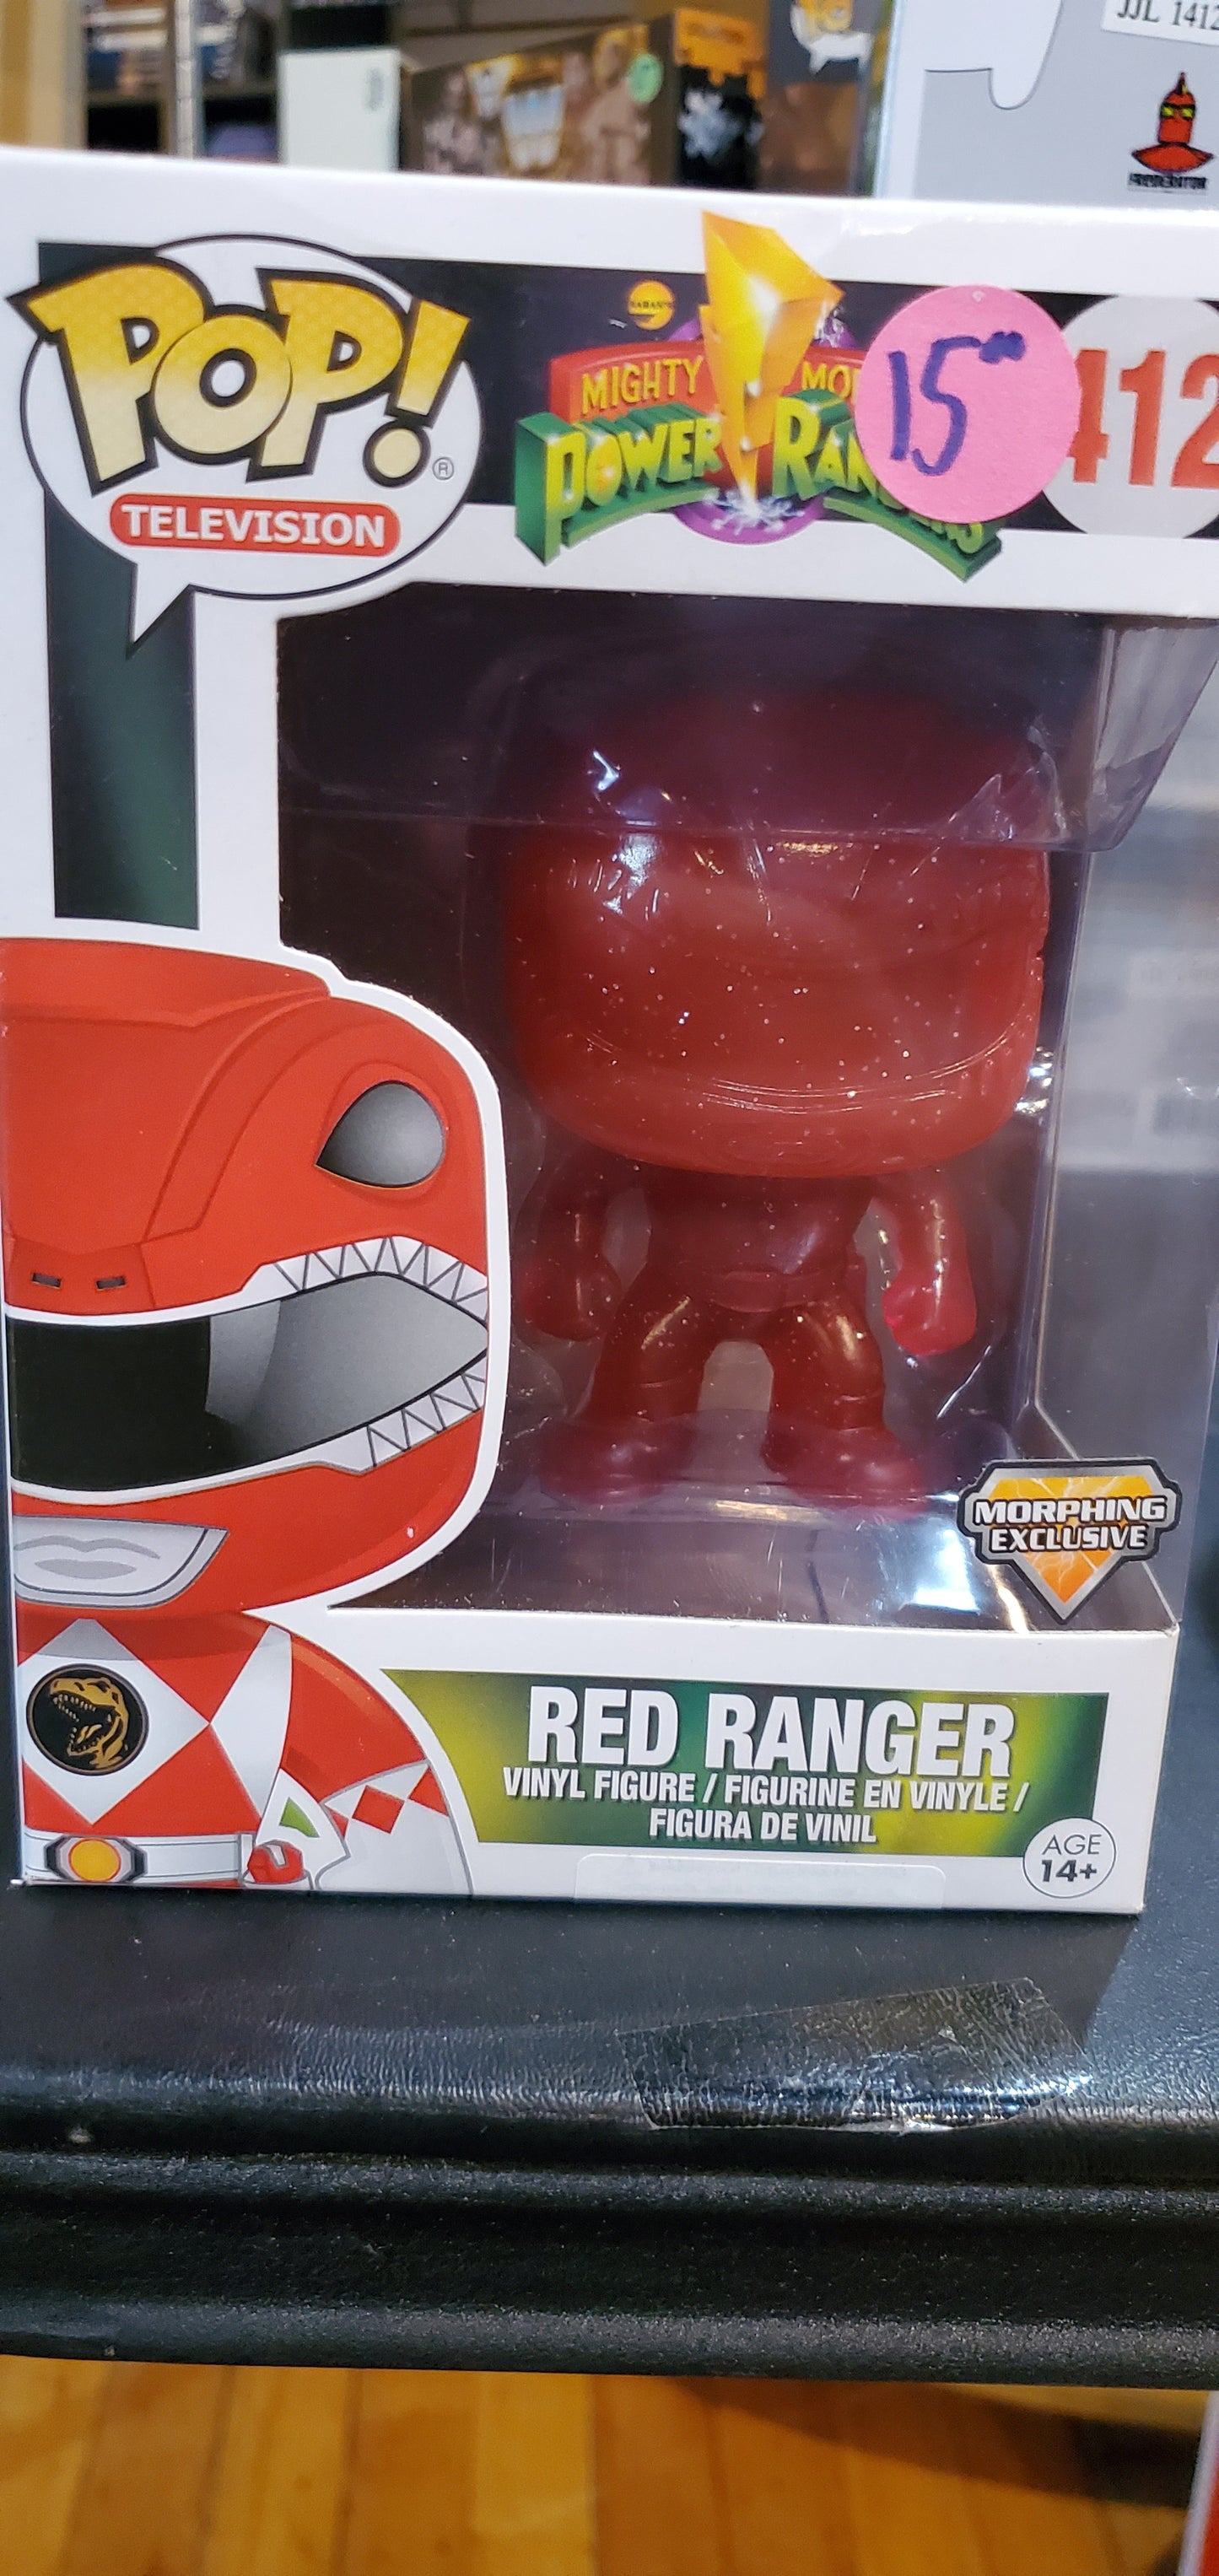 Power Rangers Red Ranger GameStop Morphin exclusive Funko Pop! vinyl figure